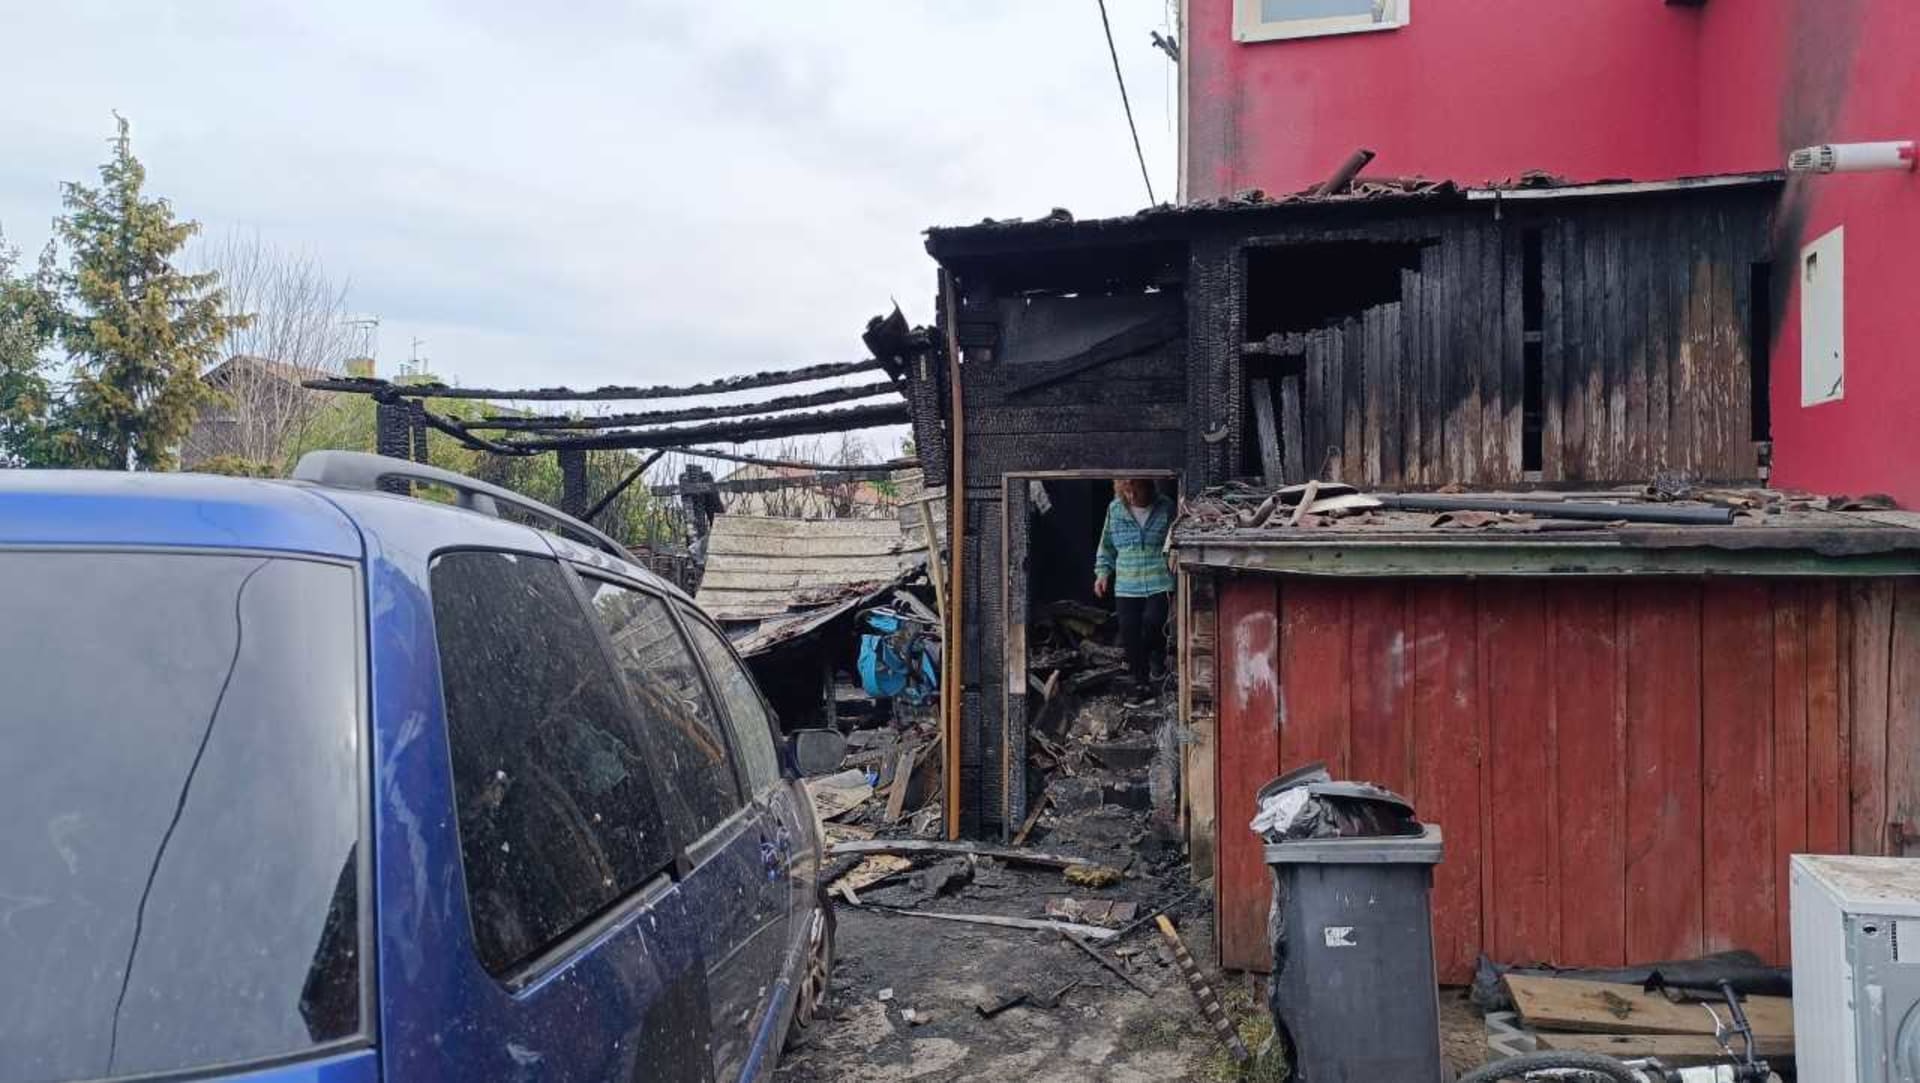 V místní části Ohrazenice hořel v neděli v podvečer dům finského typu, škoda dosáhla podle odhadů pěti milionů korun.